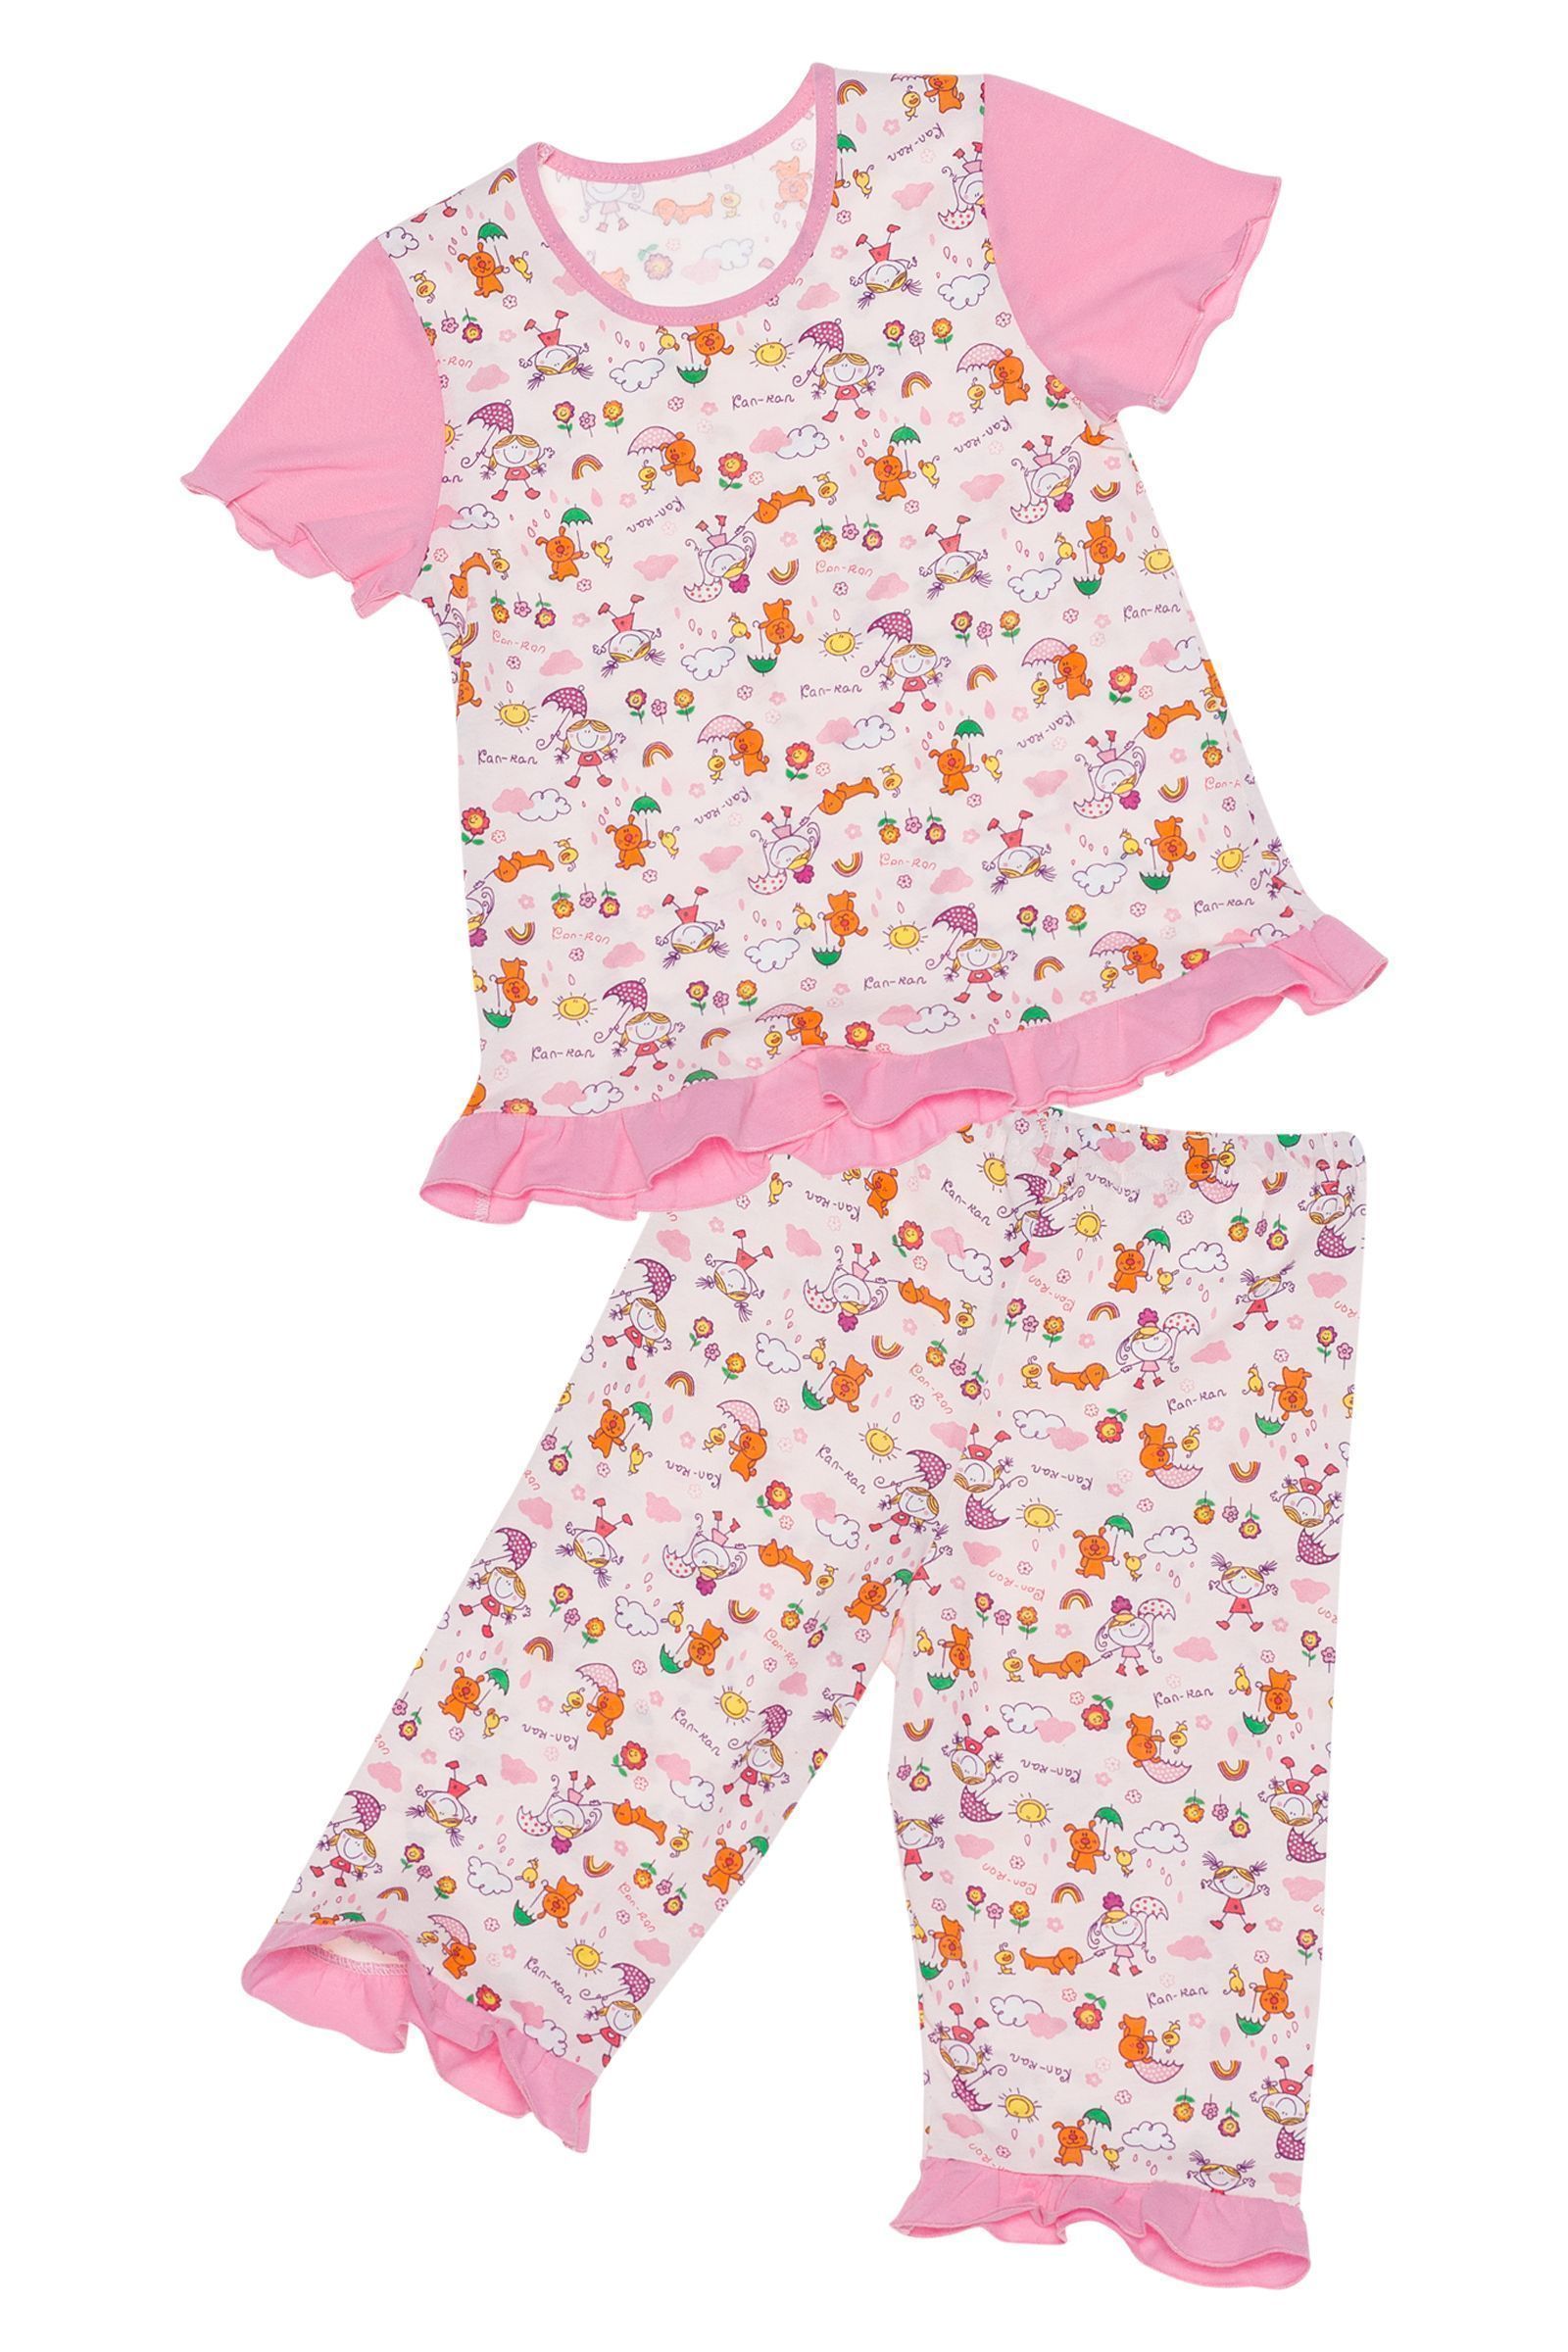 Пижама-ПЖ02-1019н оптом от производителя детской одежды 'Алёна'